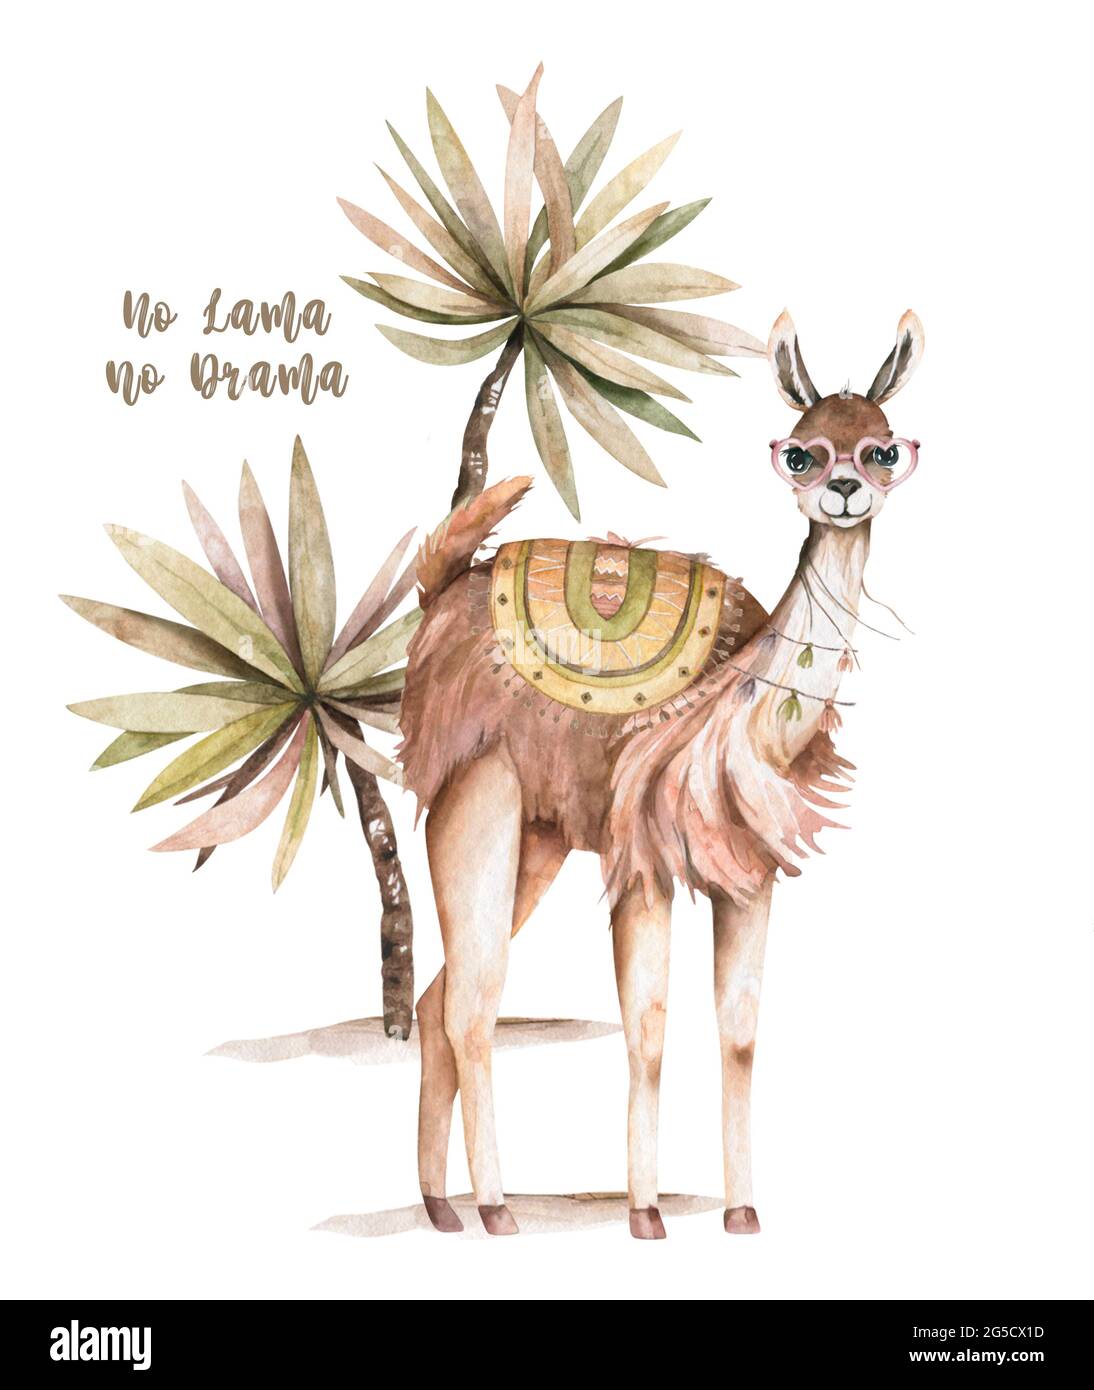 Simpatici personaggi di llamas alpaca sorridenti, a piedi, nel paesaggio desertico del Perù con cactus. Mexican divertente lama animale collezione famiglia isolato su bianco Foto Stock